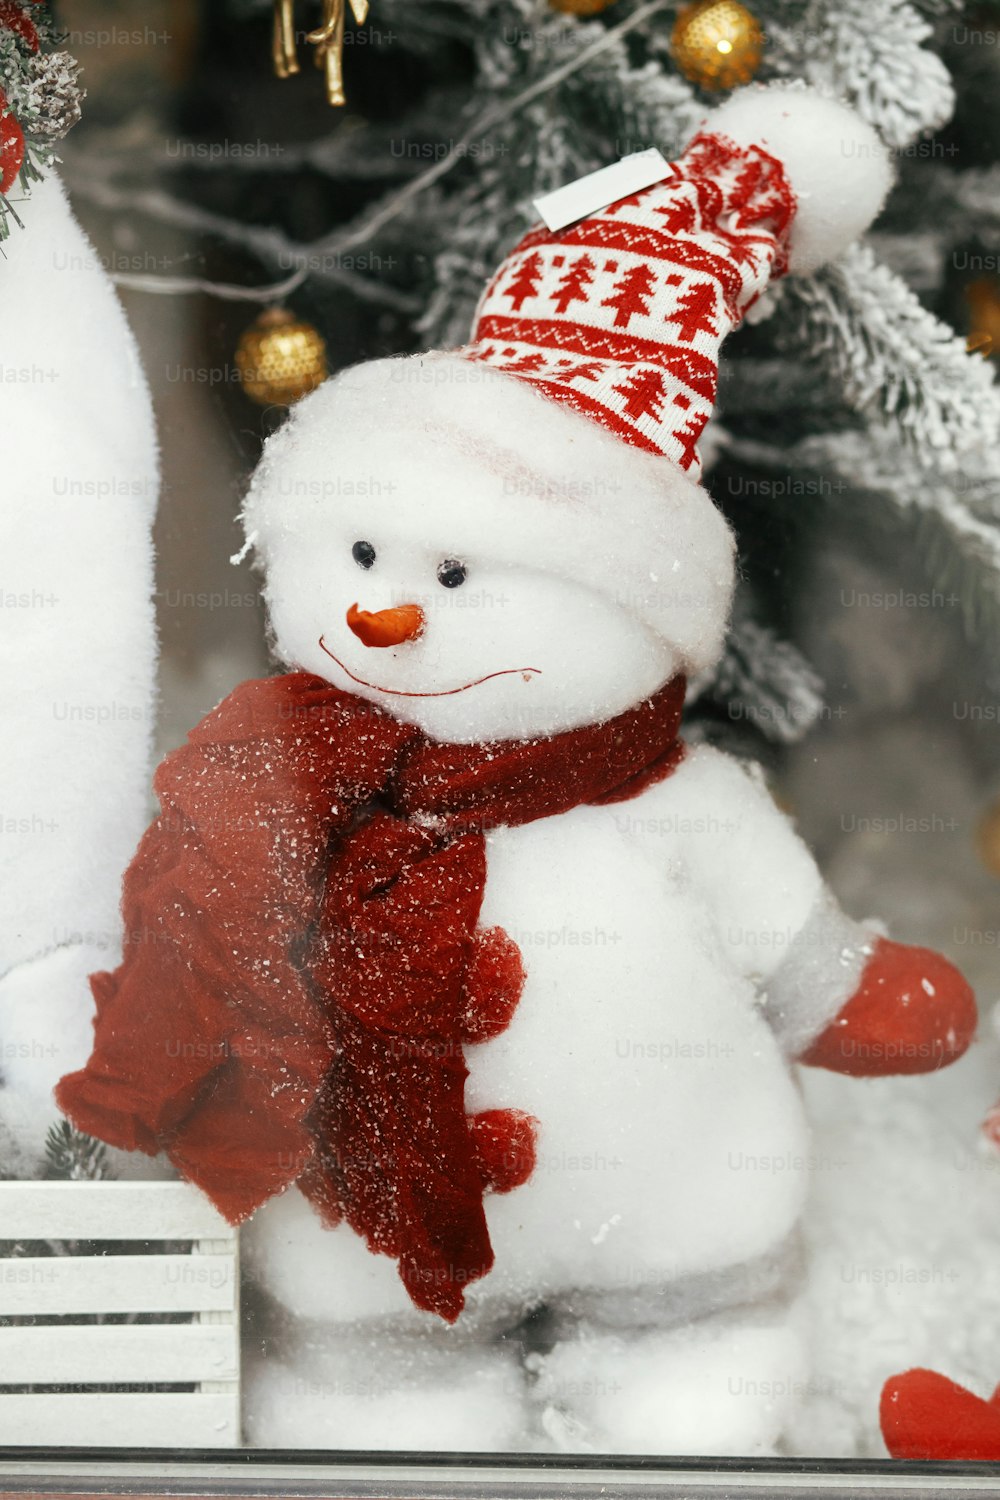 Elegante pupazzo di neve carino in cappello e con sciarpa giocattolo sotto l'albero di Natale moderno. Decorazioni natalizie per le vacanze invernali nella strada della città europea. Buon Natale!